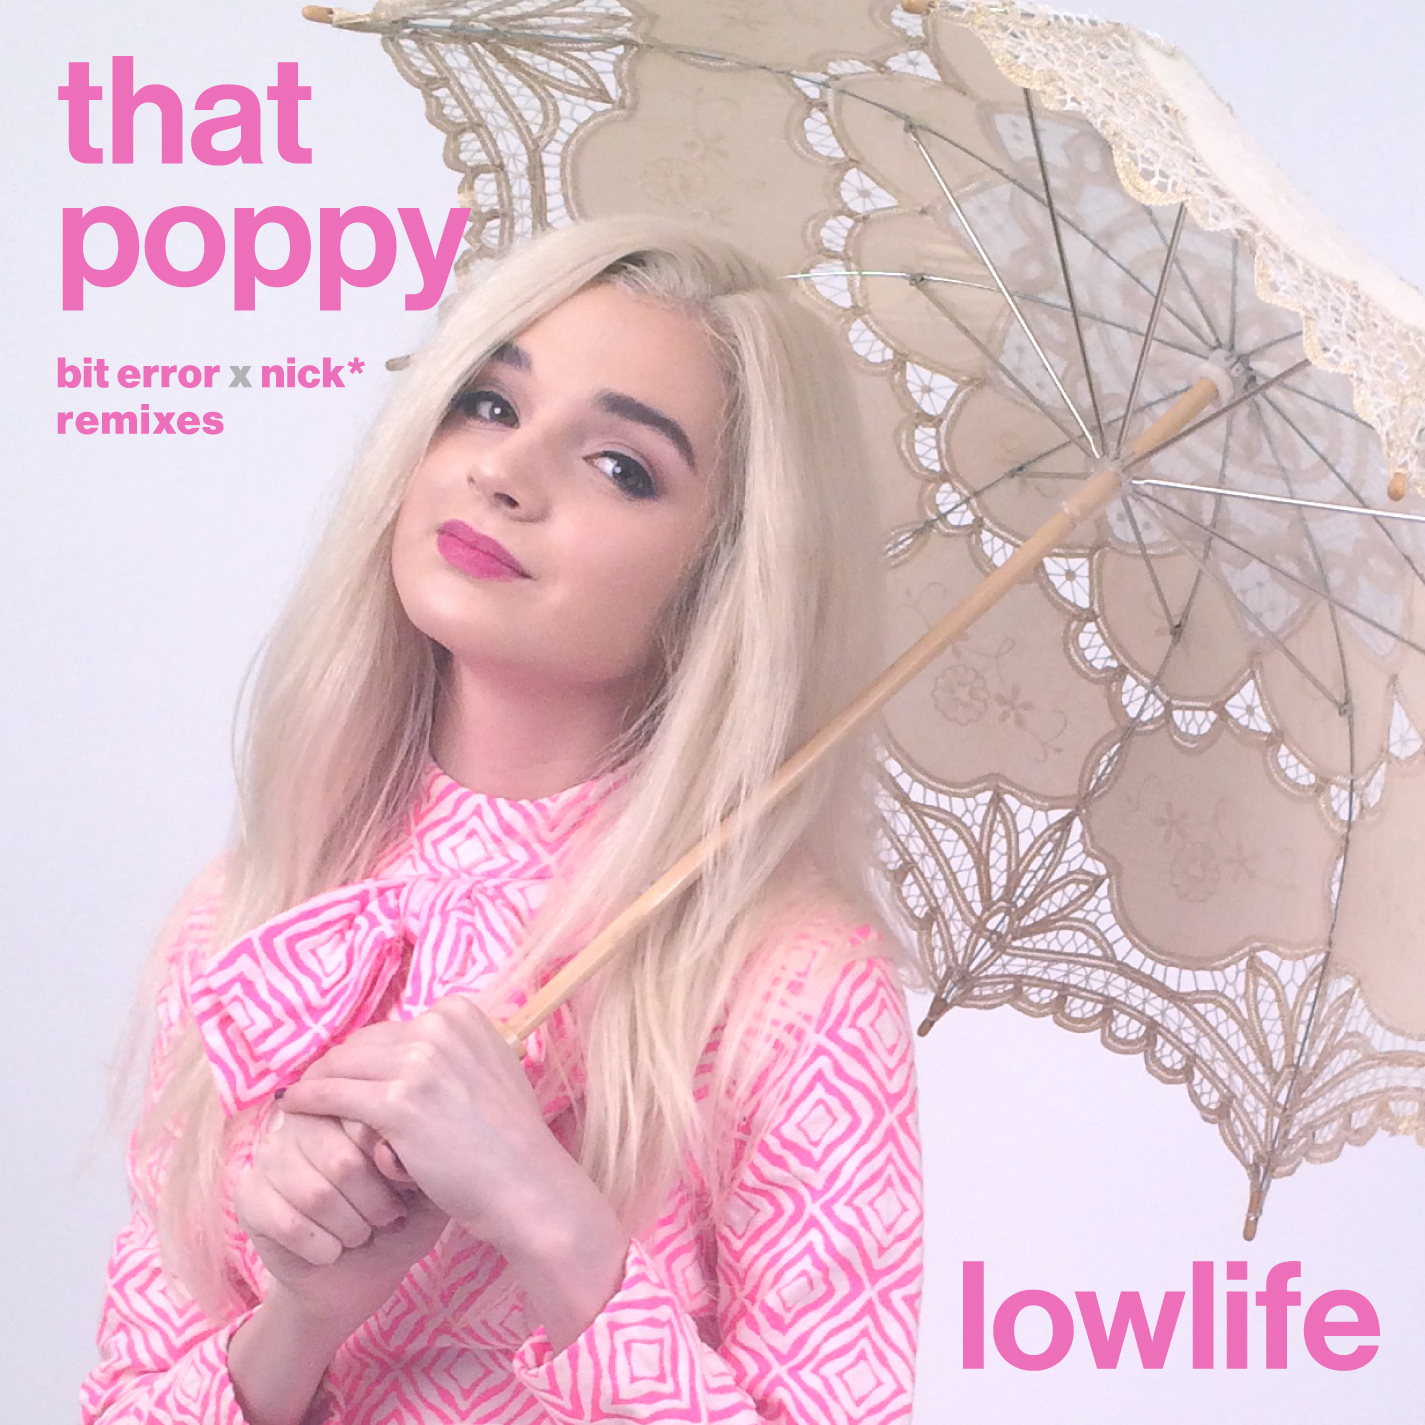 Poppy copy - Lowlife Bit Error X Nick* Remix